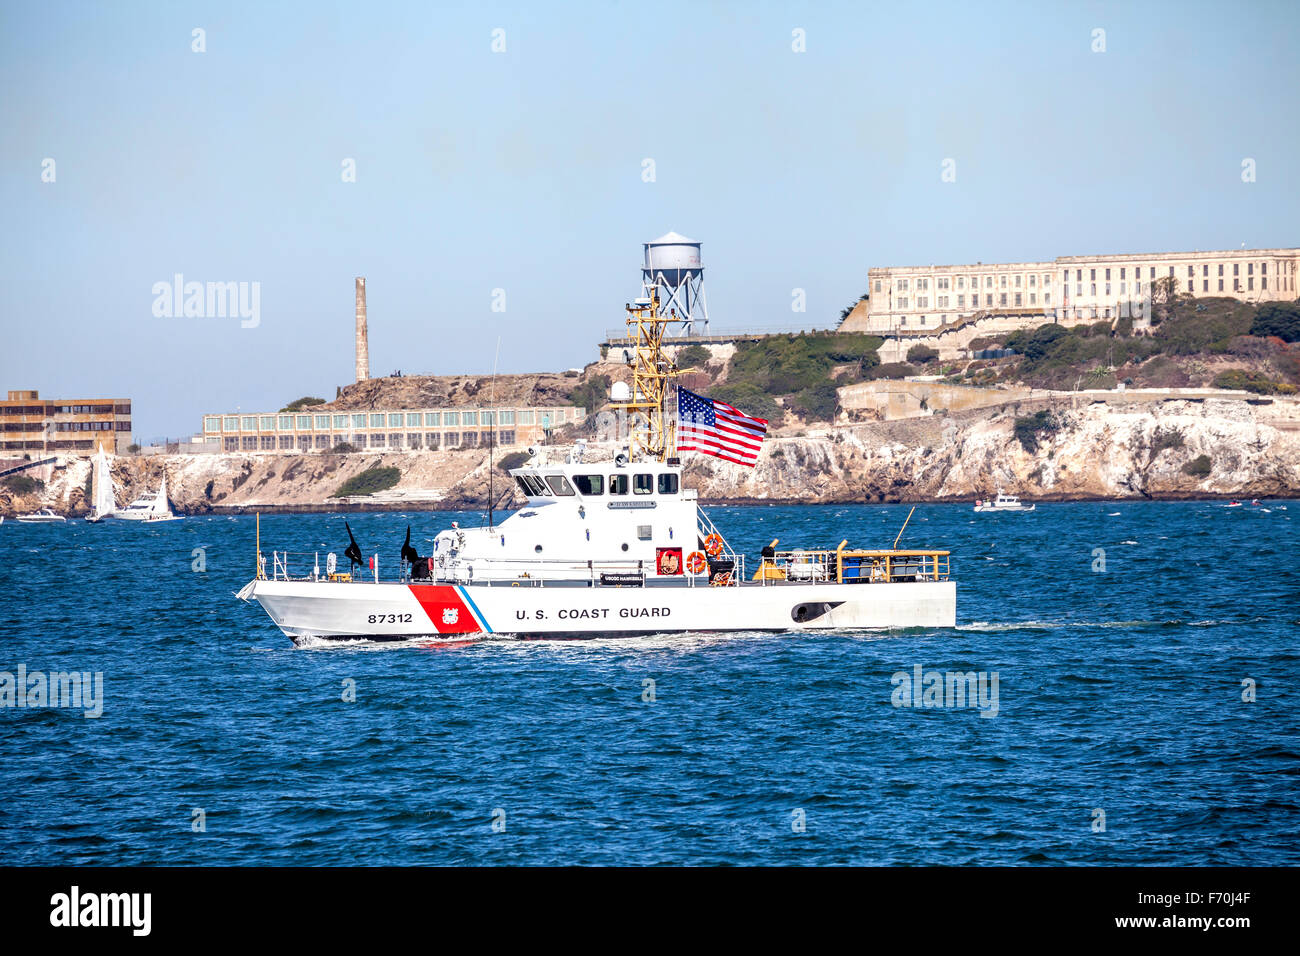 El patrullaje de la Guardia Costera estadounidense de la Bahía de San Francisco durante la semana de la flota, en San Francisco, California, EE.UU. Foto de stock